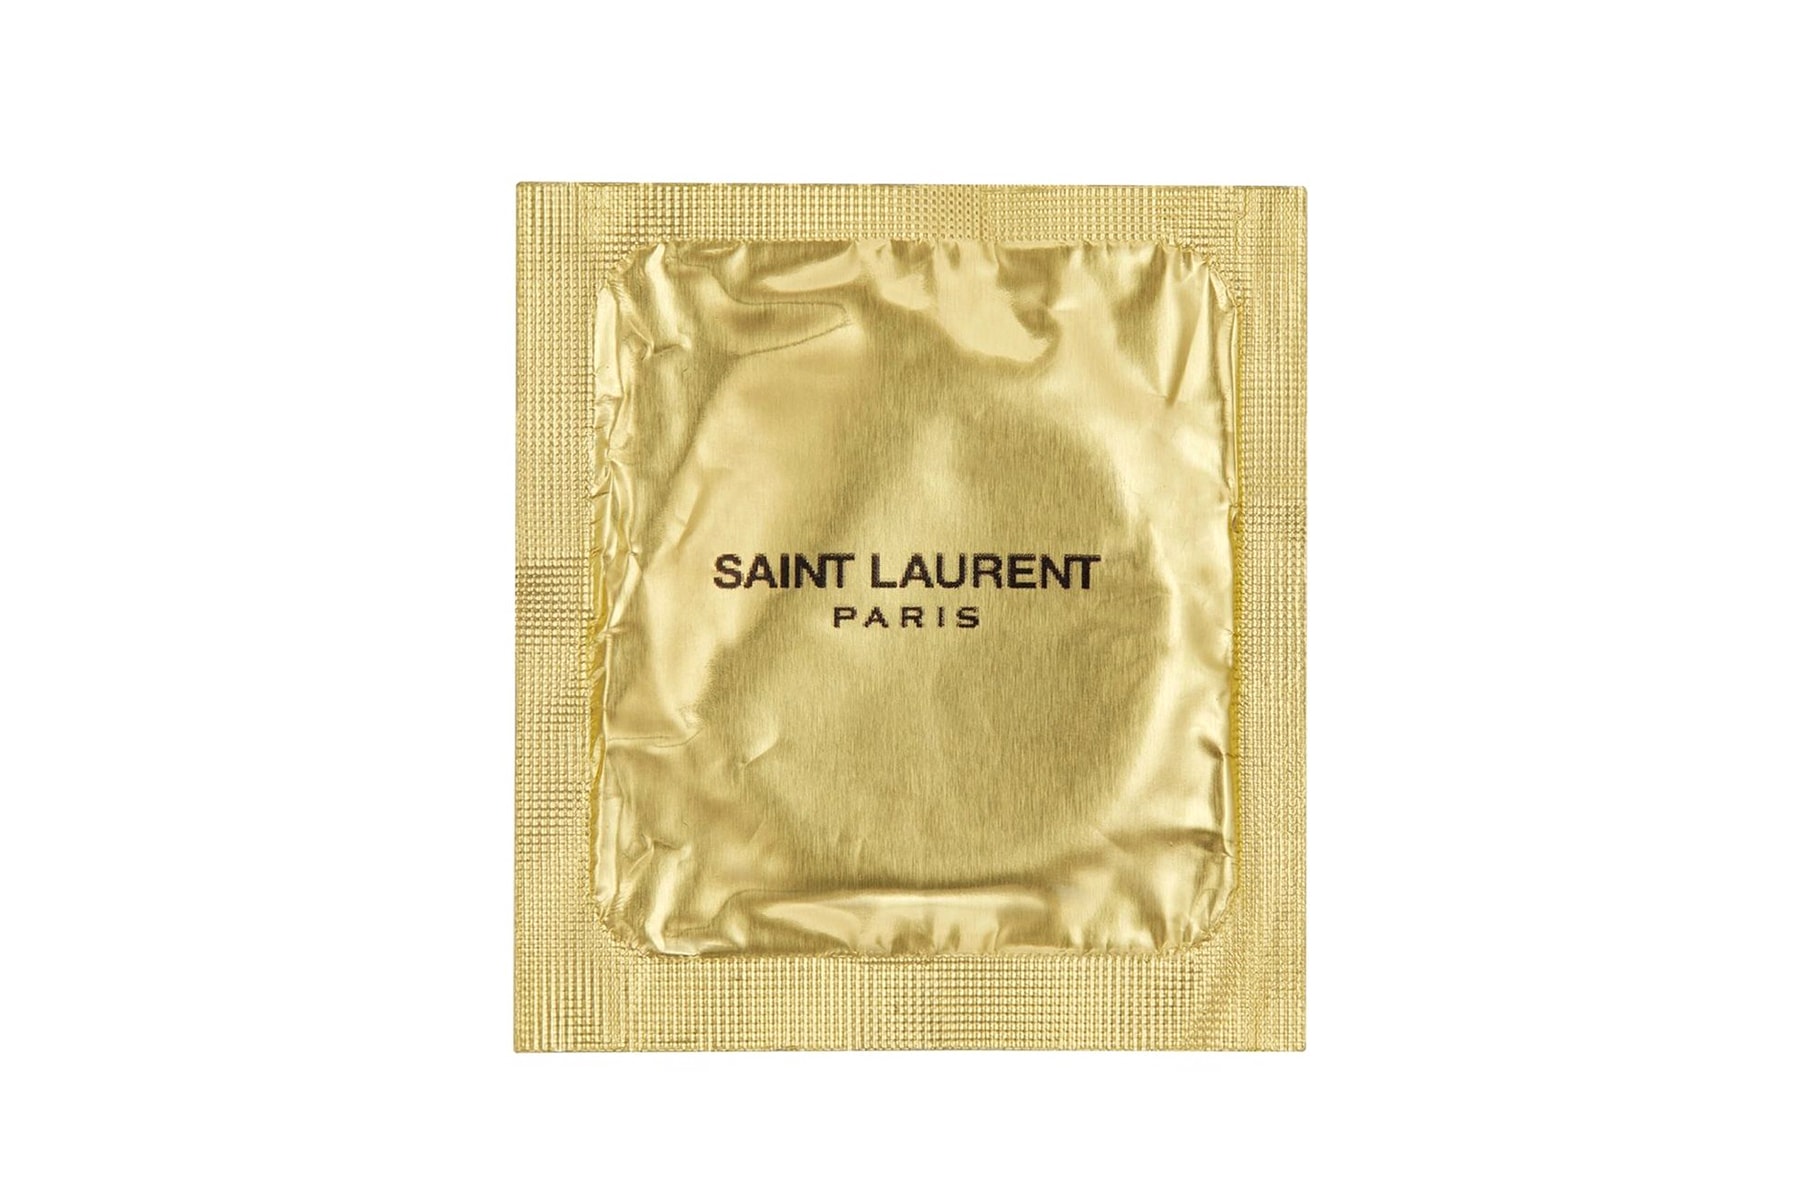 Saint Laurent Unveils Bougie €2 EUR Condoms Branded YSL Yves Saint Laurent Anthony Vaccarello sex where to buy france paris Rive Droite pop up